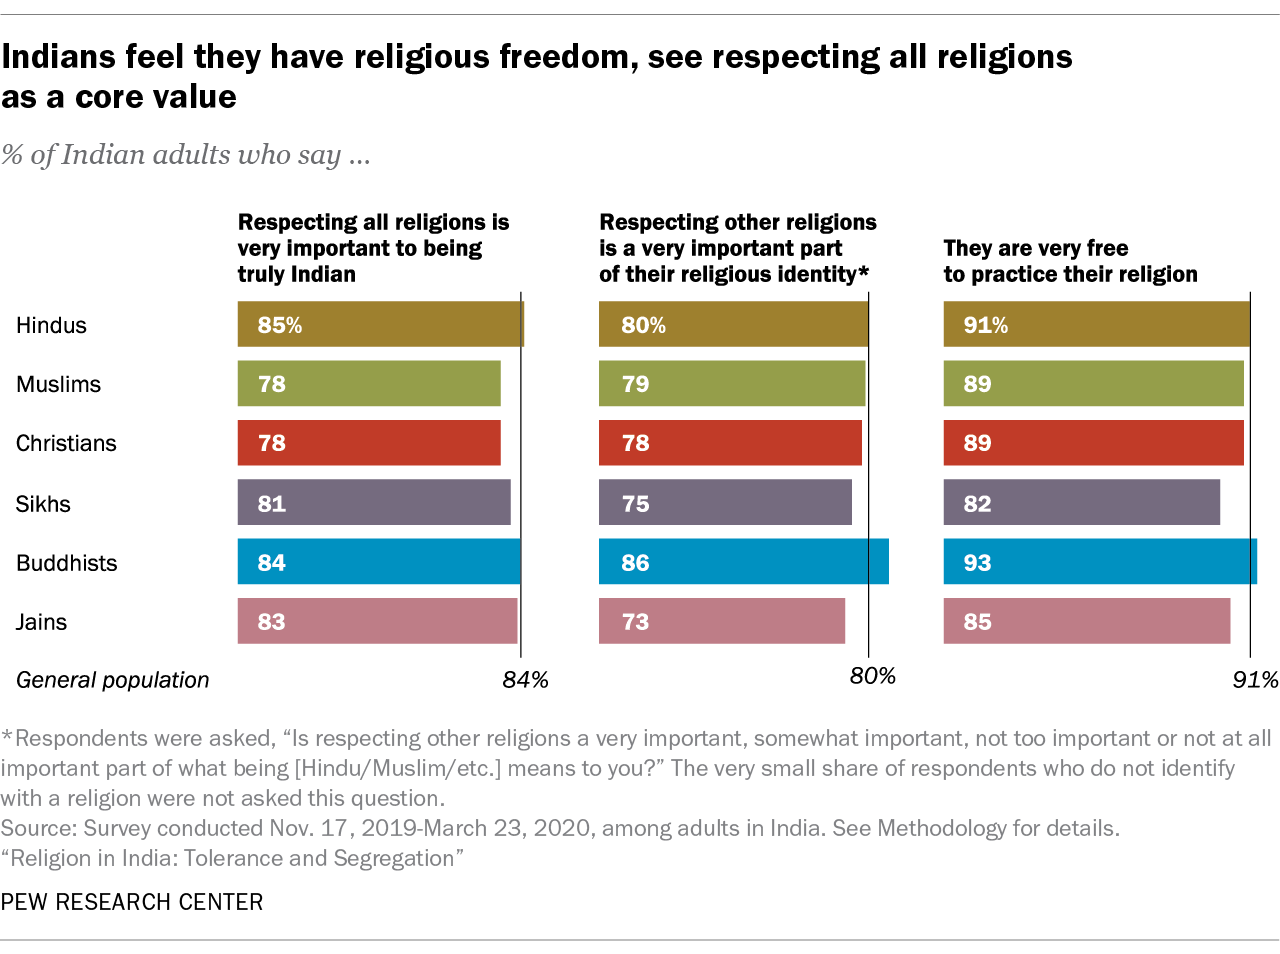 az indiánok úgy érzik, hogy vallásszabadságuk van, lásd az összes vallás tiszteletben tartását alapvető értékként